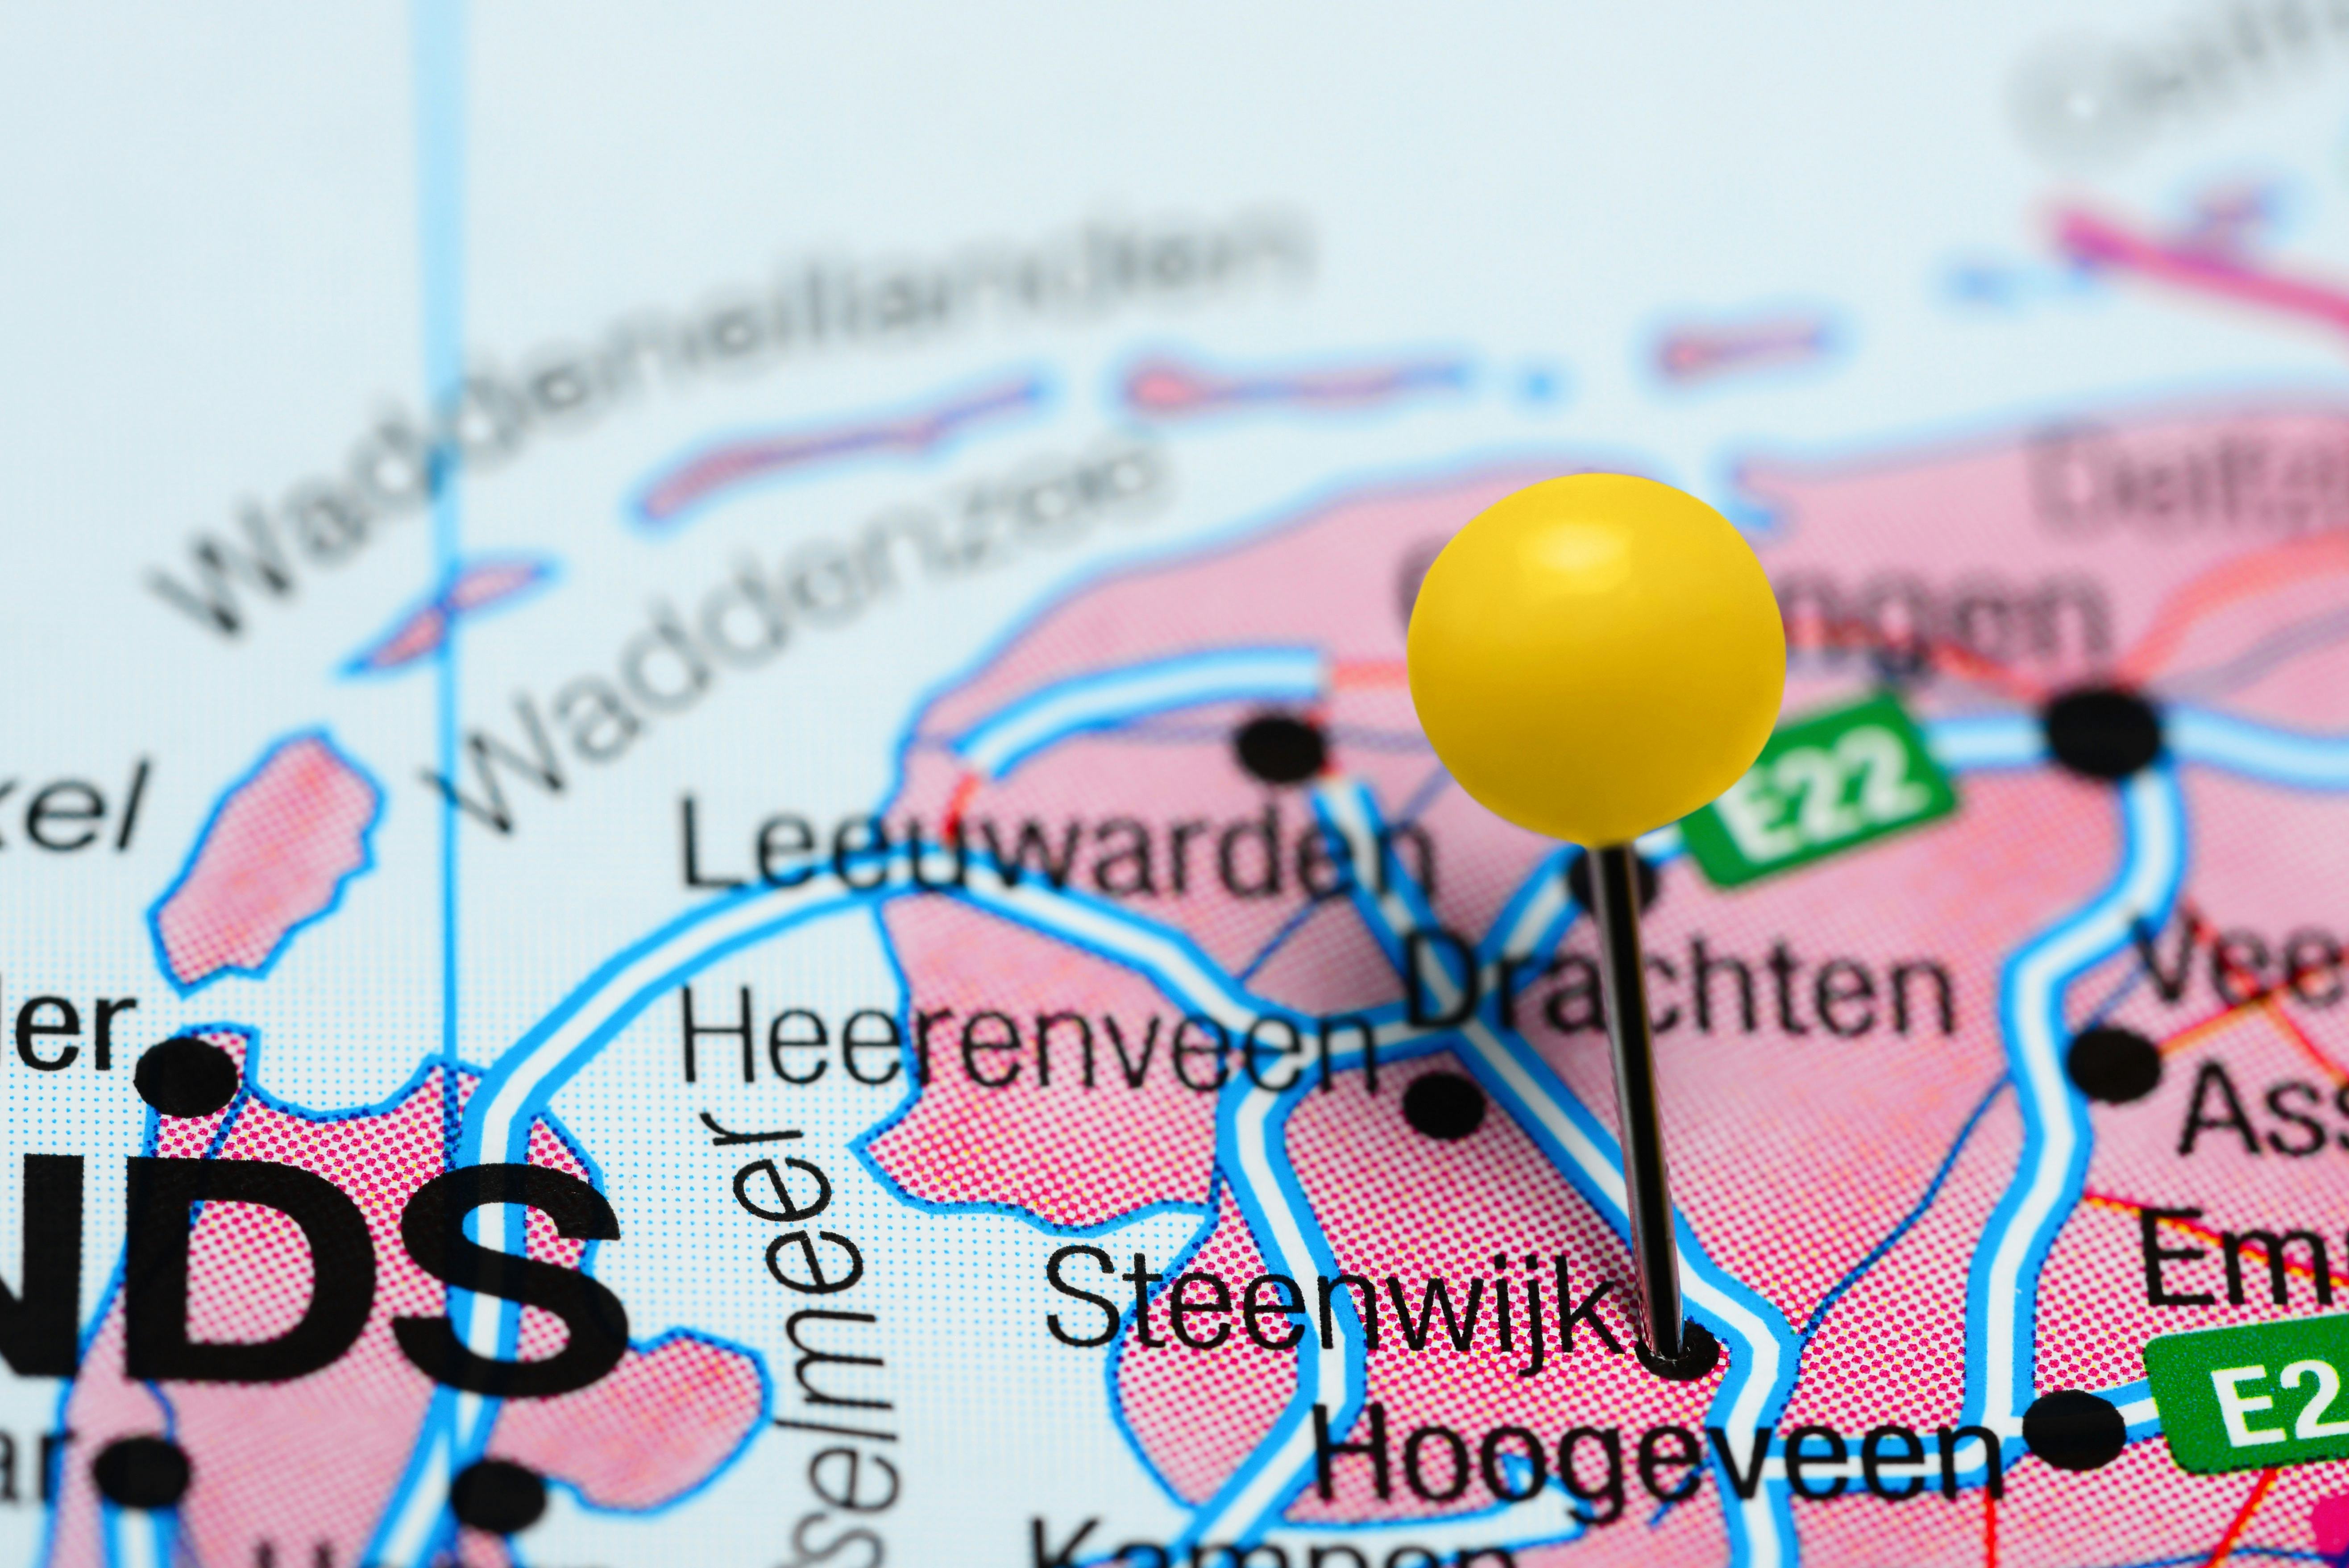 Hypermarkt bij Steenwijk is definitief